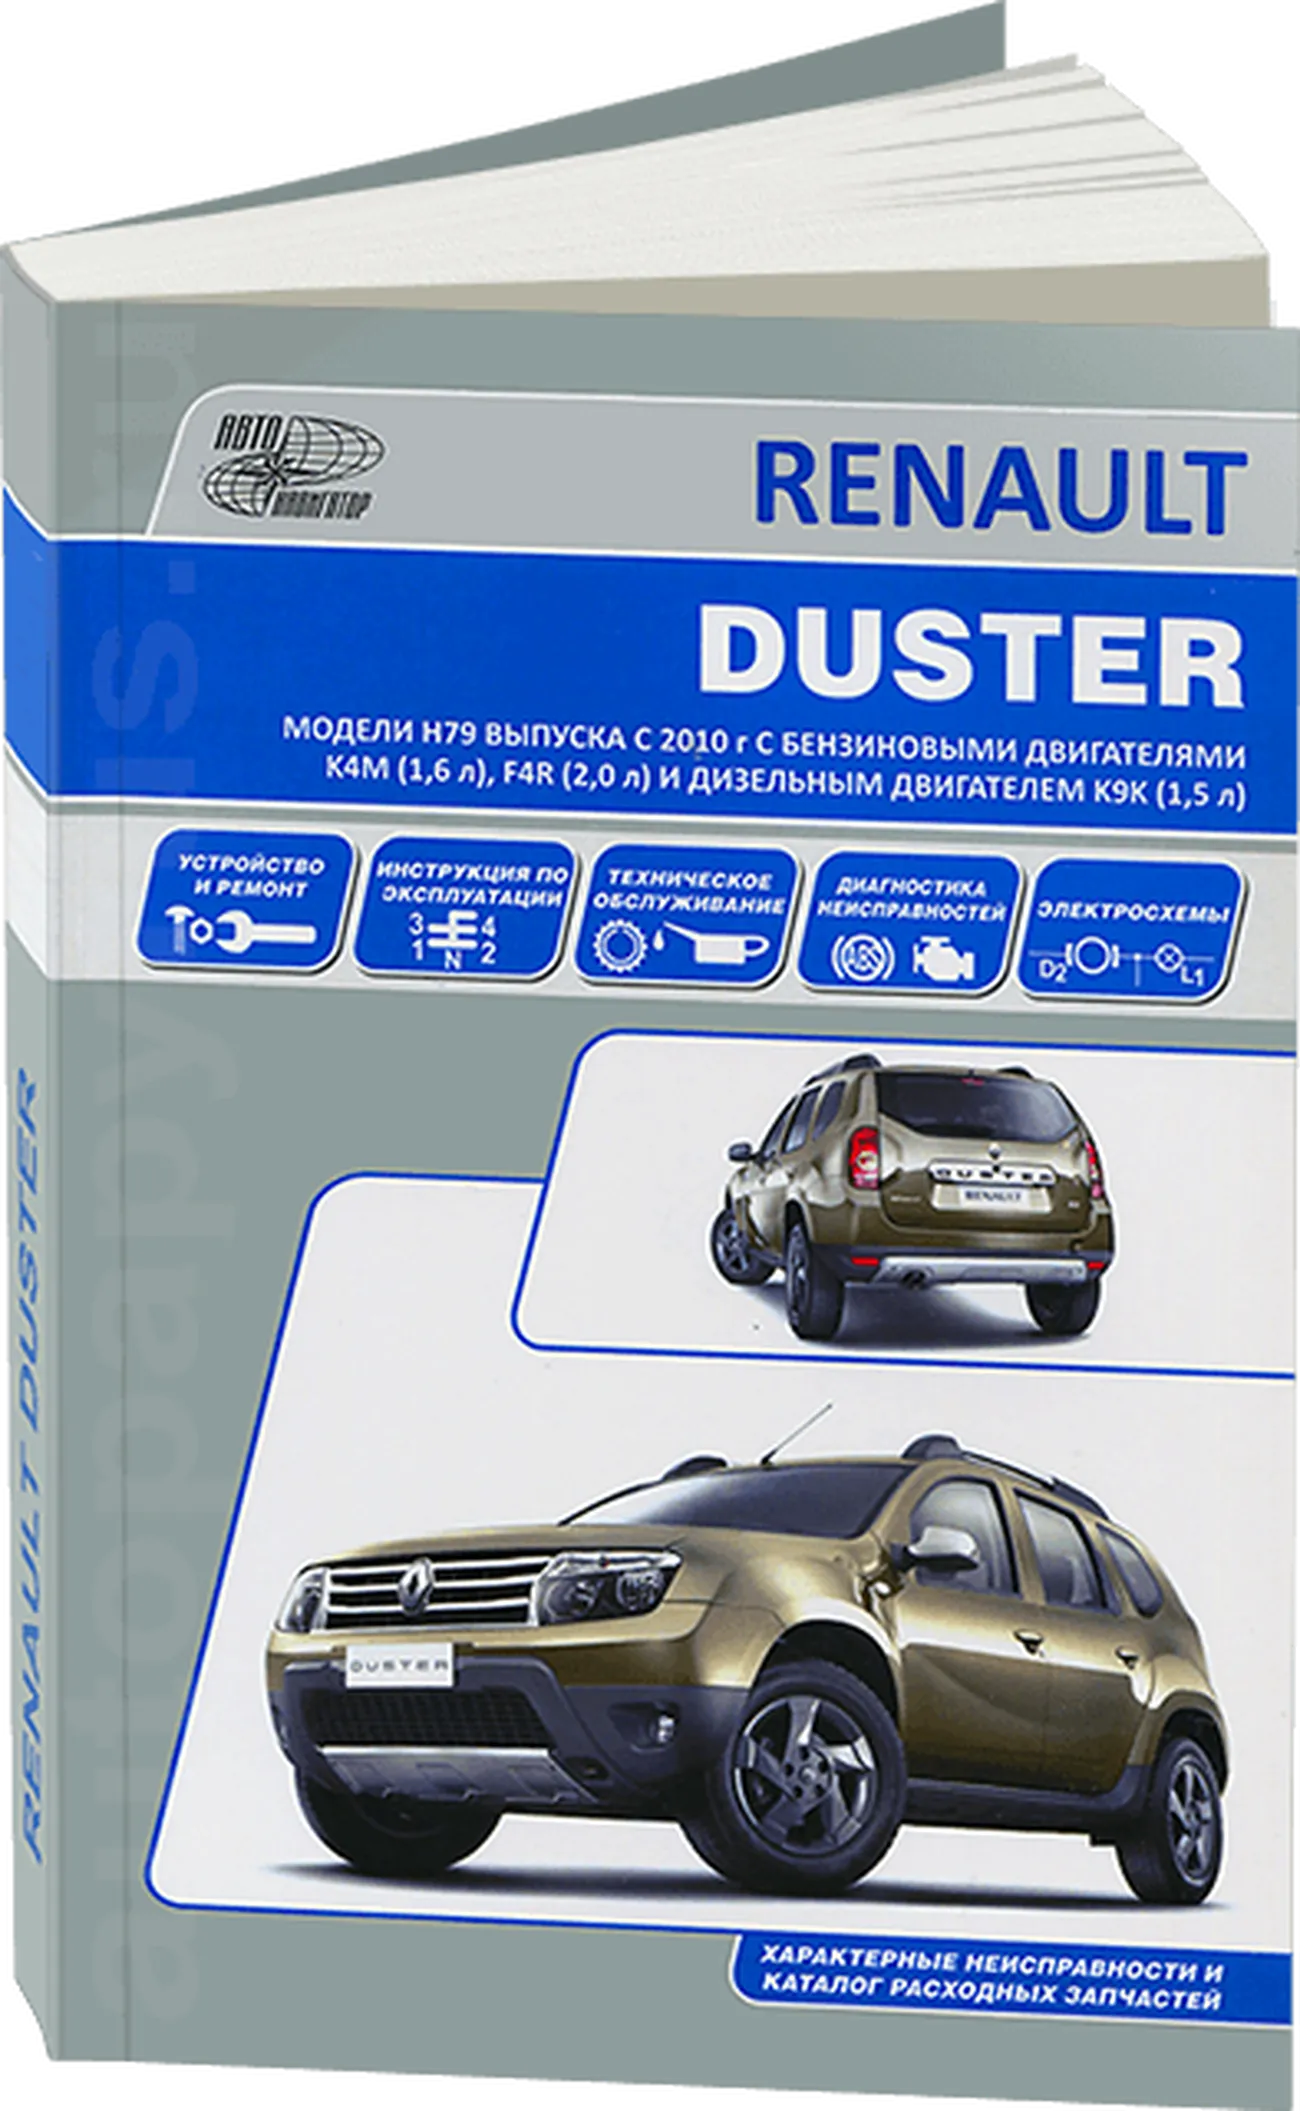 Книга: RENAULT DUSTER (б , д) с 2010 г.в., рем., экспл., то | Автонавигатор